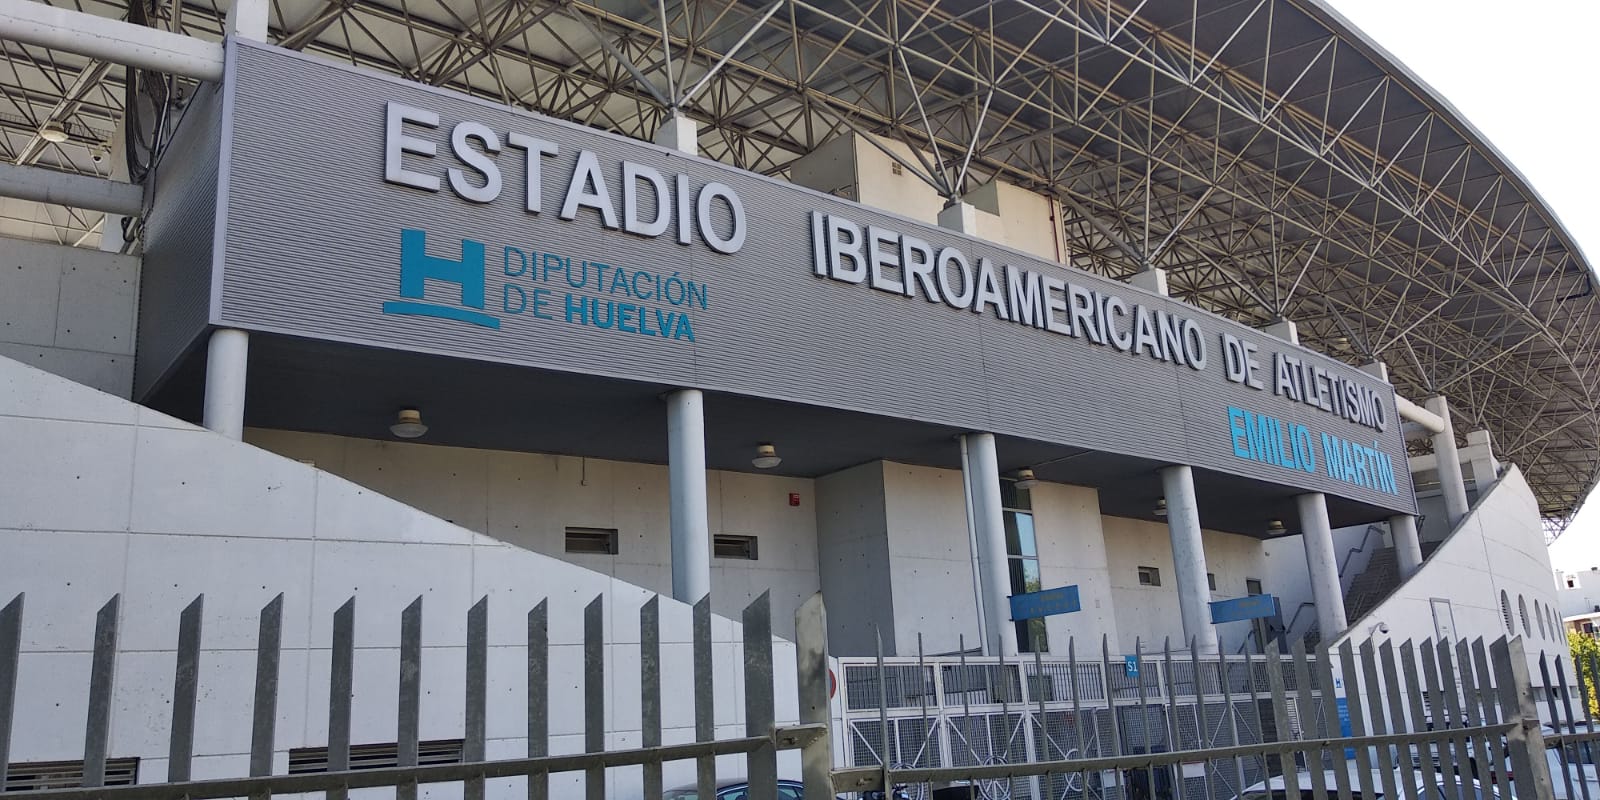 Estadio Iberoamericano de Atletismo